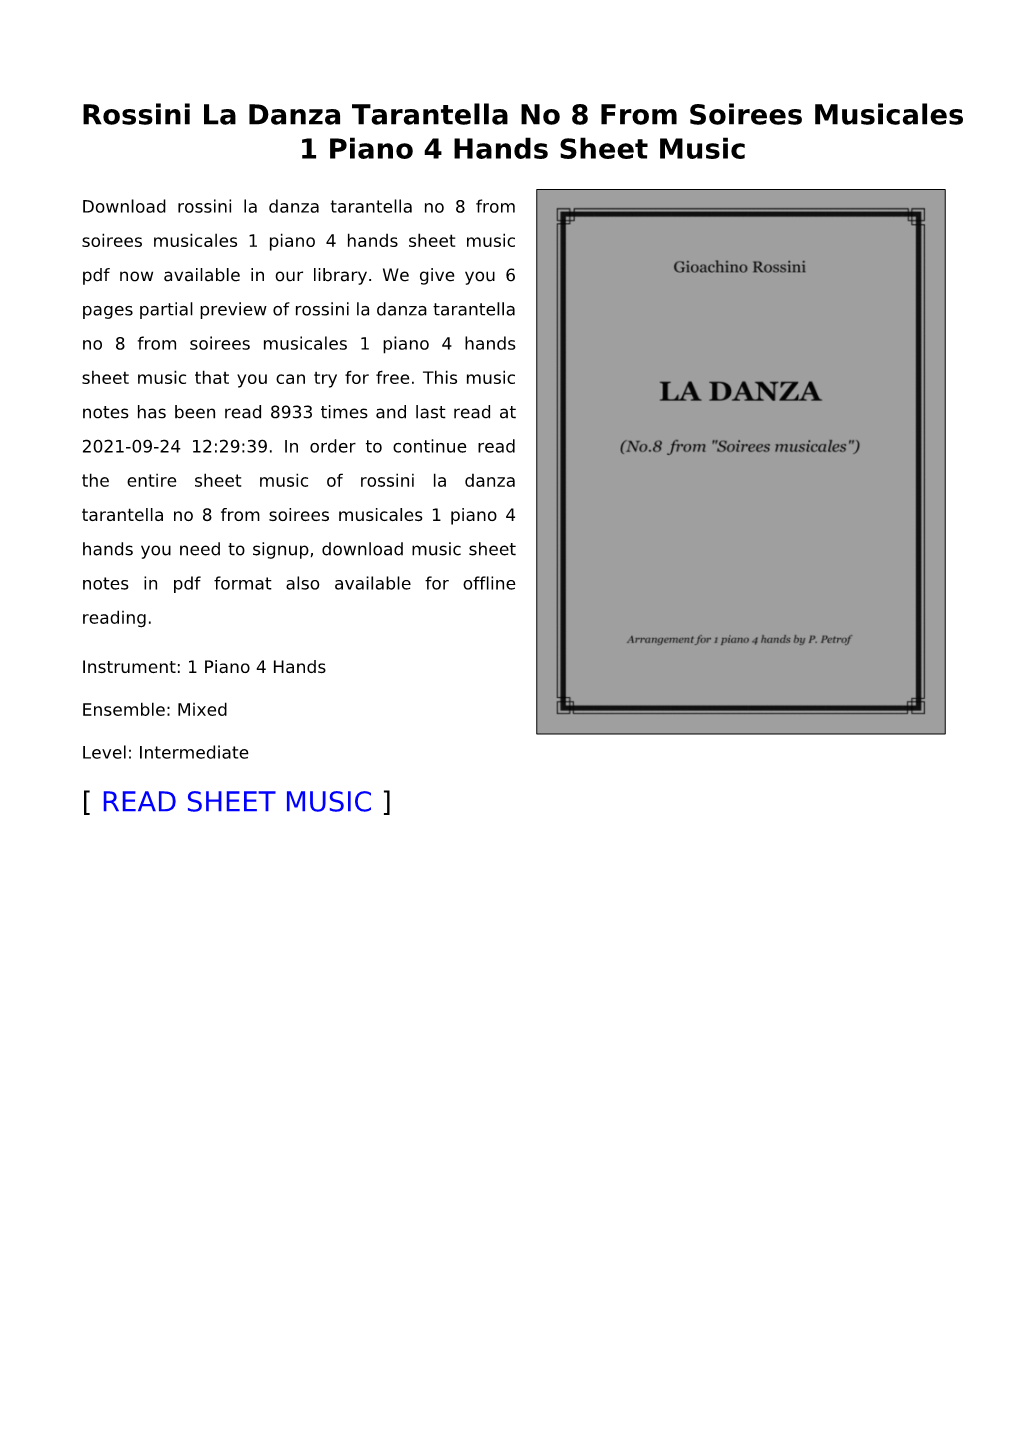 Rossini La Danza Tarantella No 8 from Soirees Musicales 1 Piano 4 Hands Sheet Music